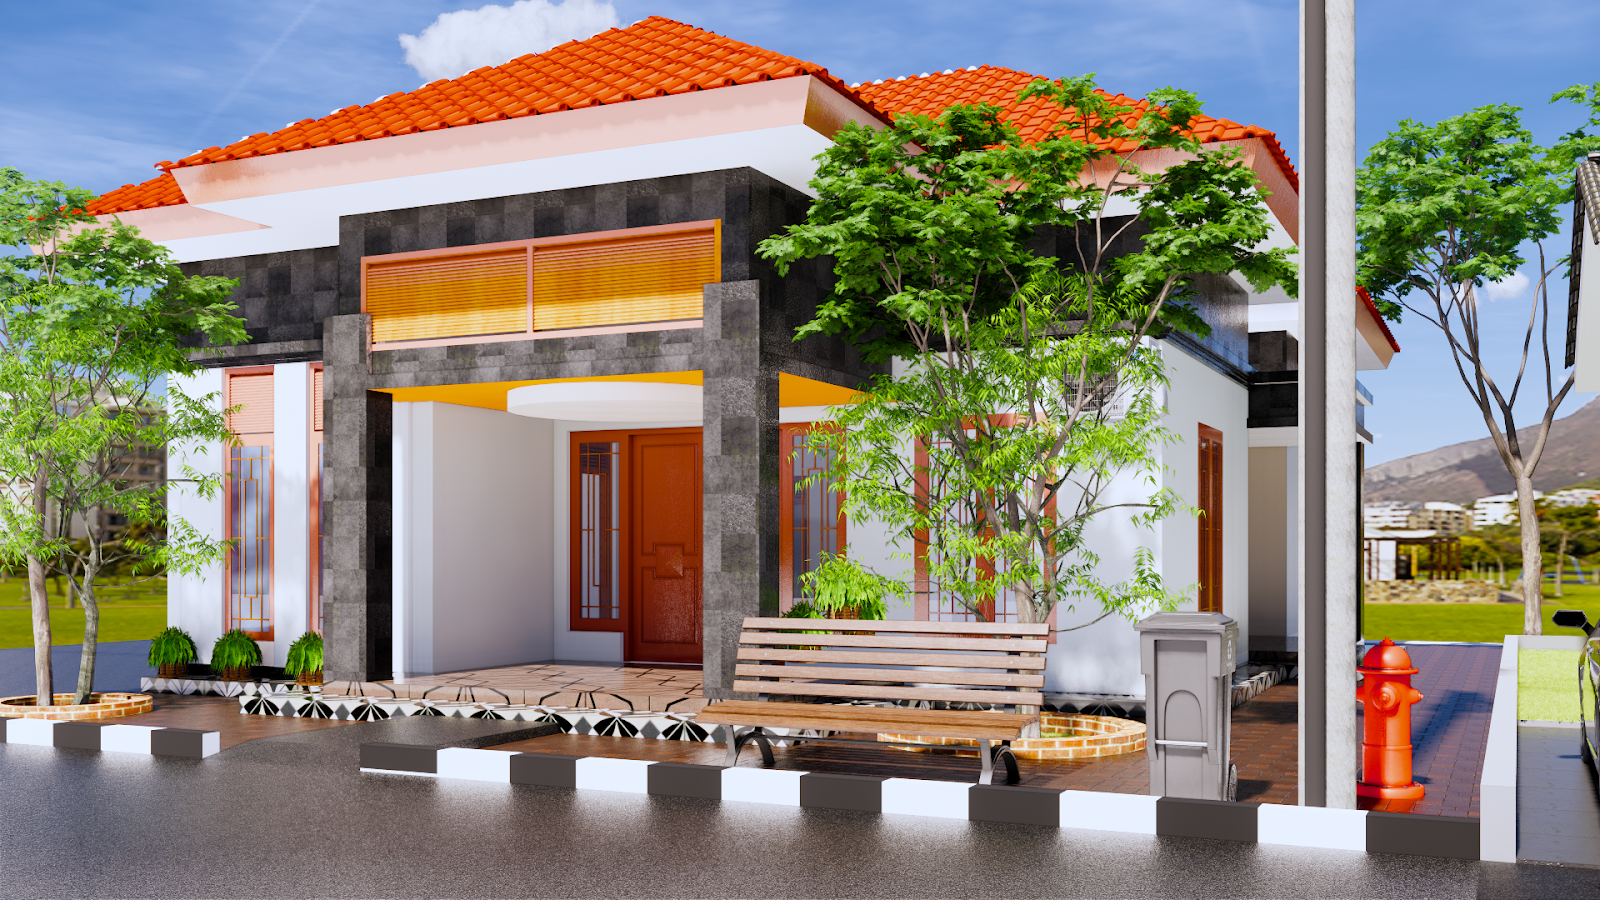  Desain  Rumah  Minimalis  Modern Terbaru Beserta Anggaran  Biaya  DESAIN  RUMAH  MINIMALIS 